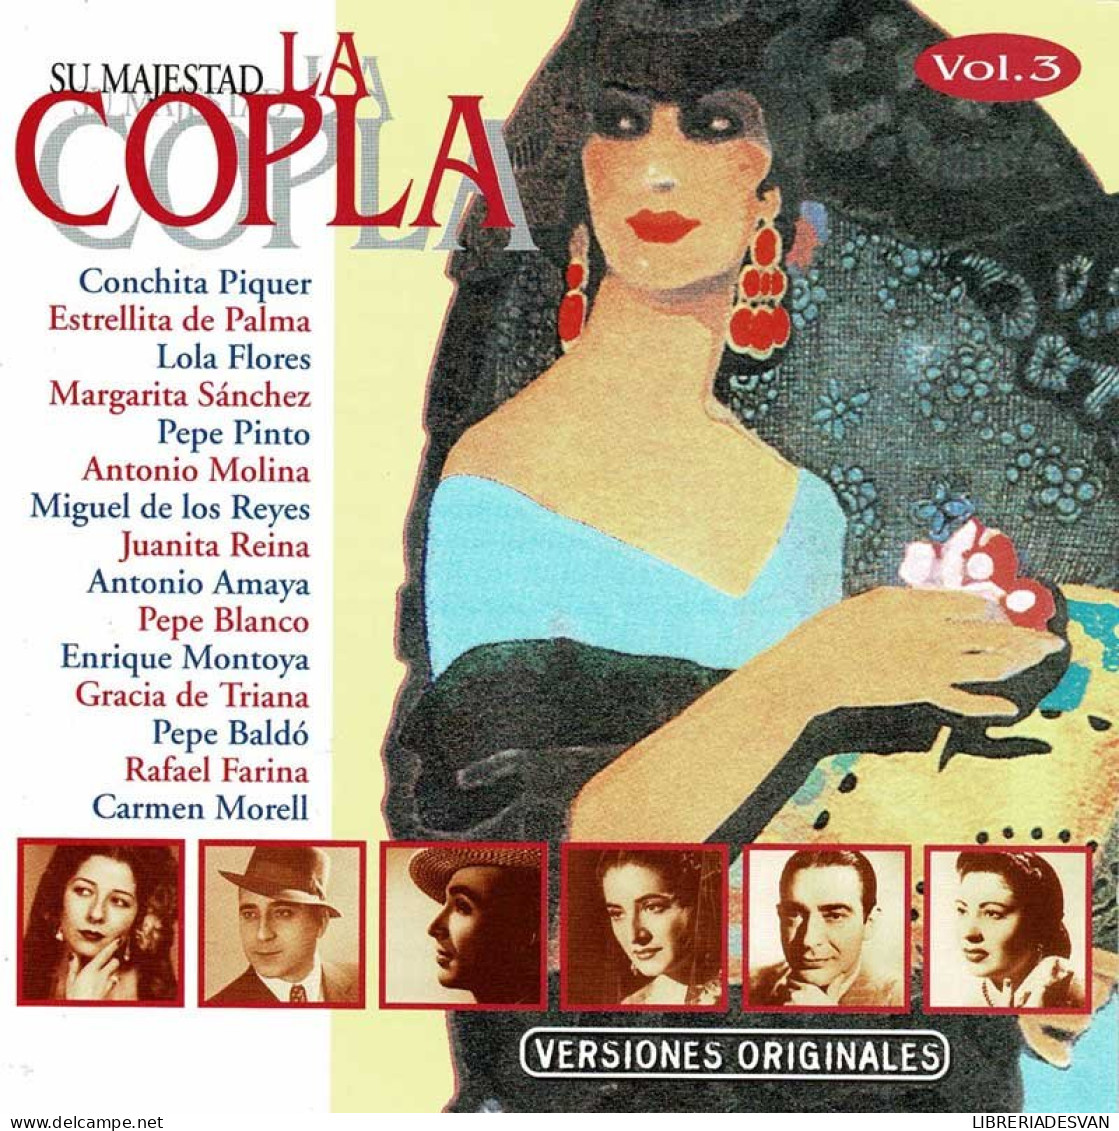 Su Majestad La Copla Vol. 3. CD - Other - Spanish Music